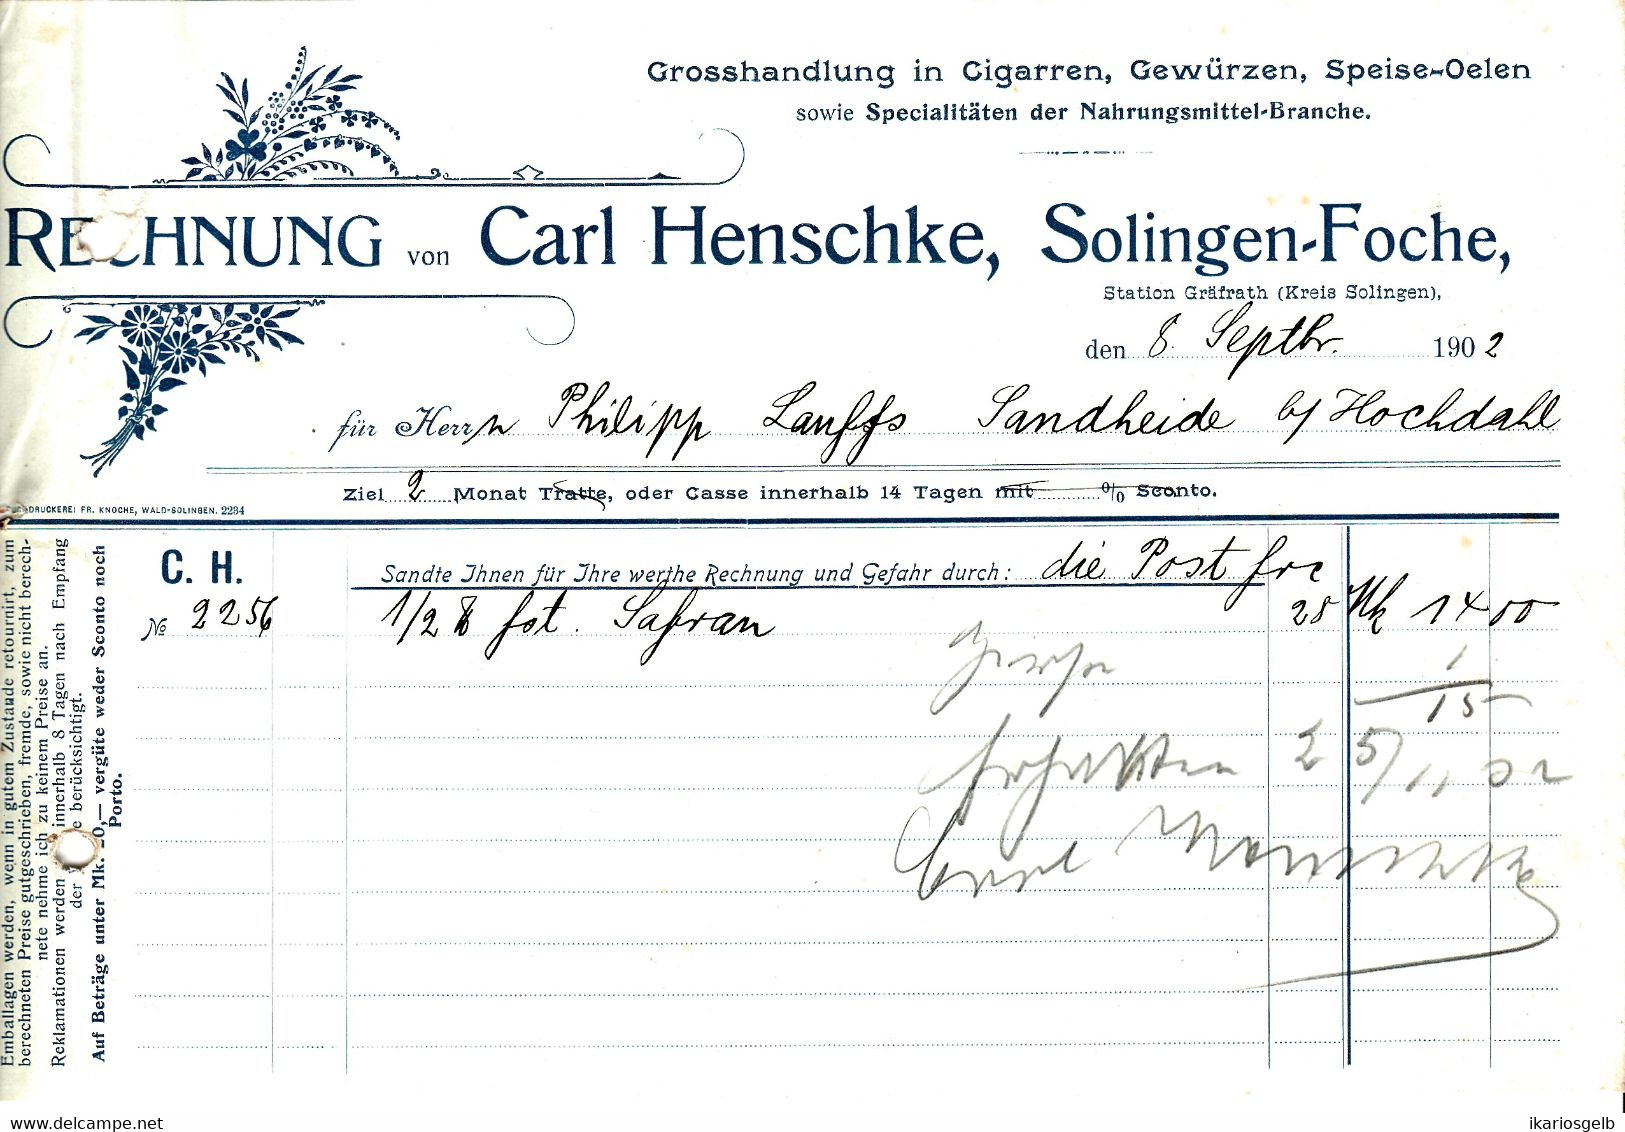 Solingen Foche 1902 Deko Rechnung " Carl Henschke Cigarren Gewürze Speiseöle Großhandlung " - Levensmiddelen